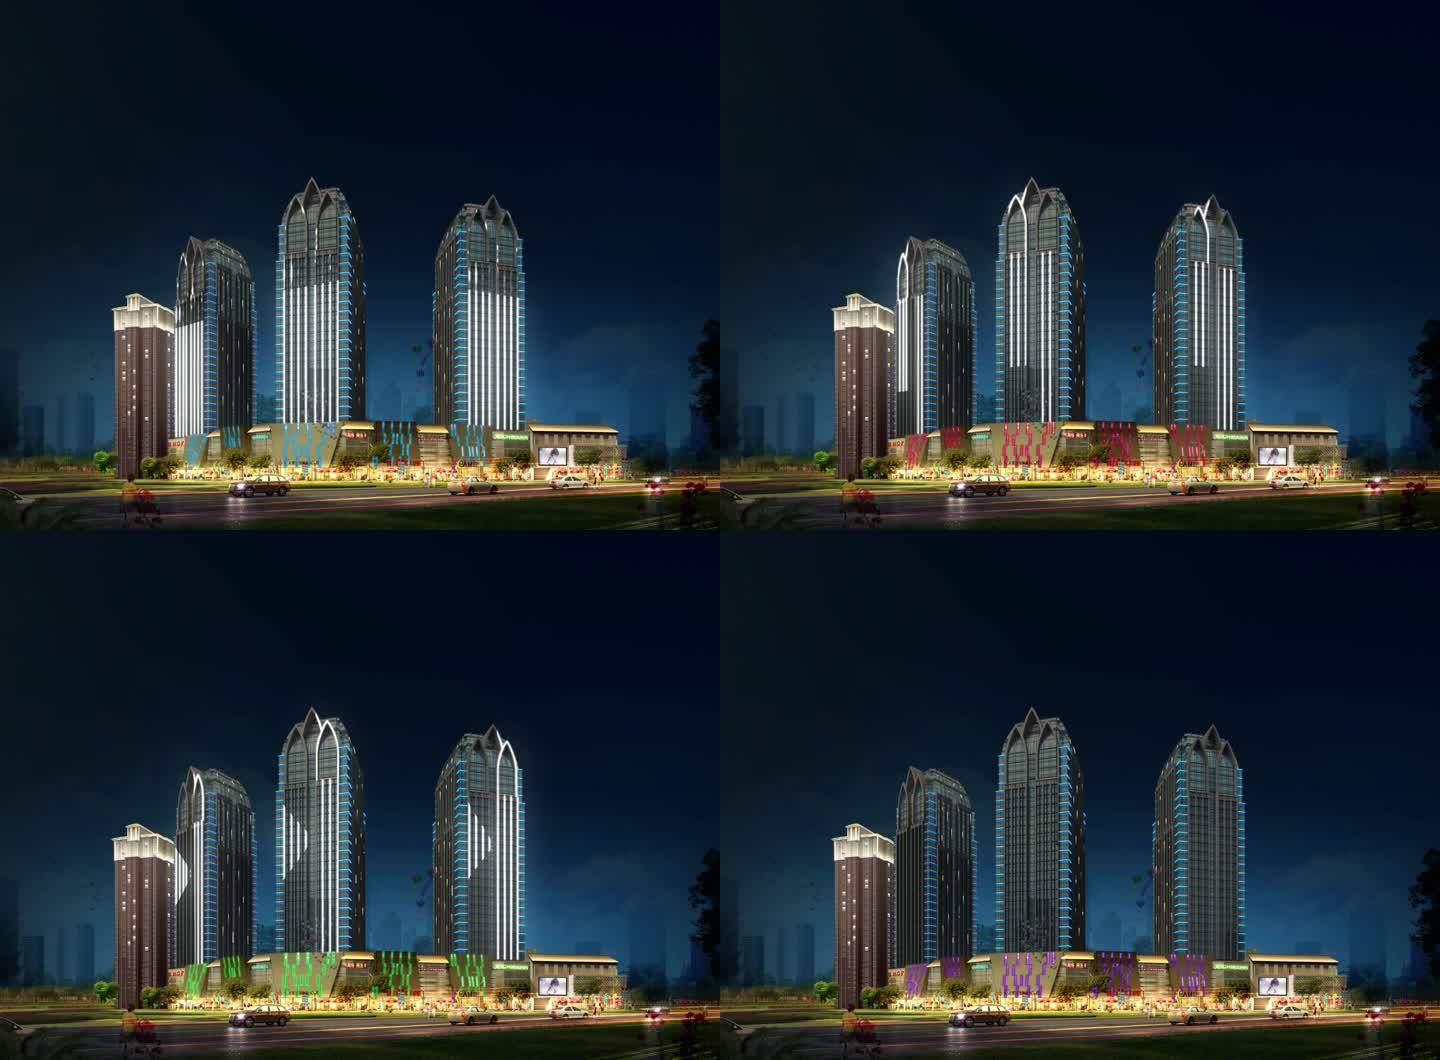 七彩大楼大厦灯光亮化设计展示案例素材